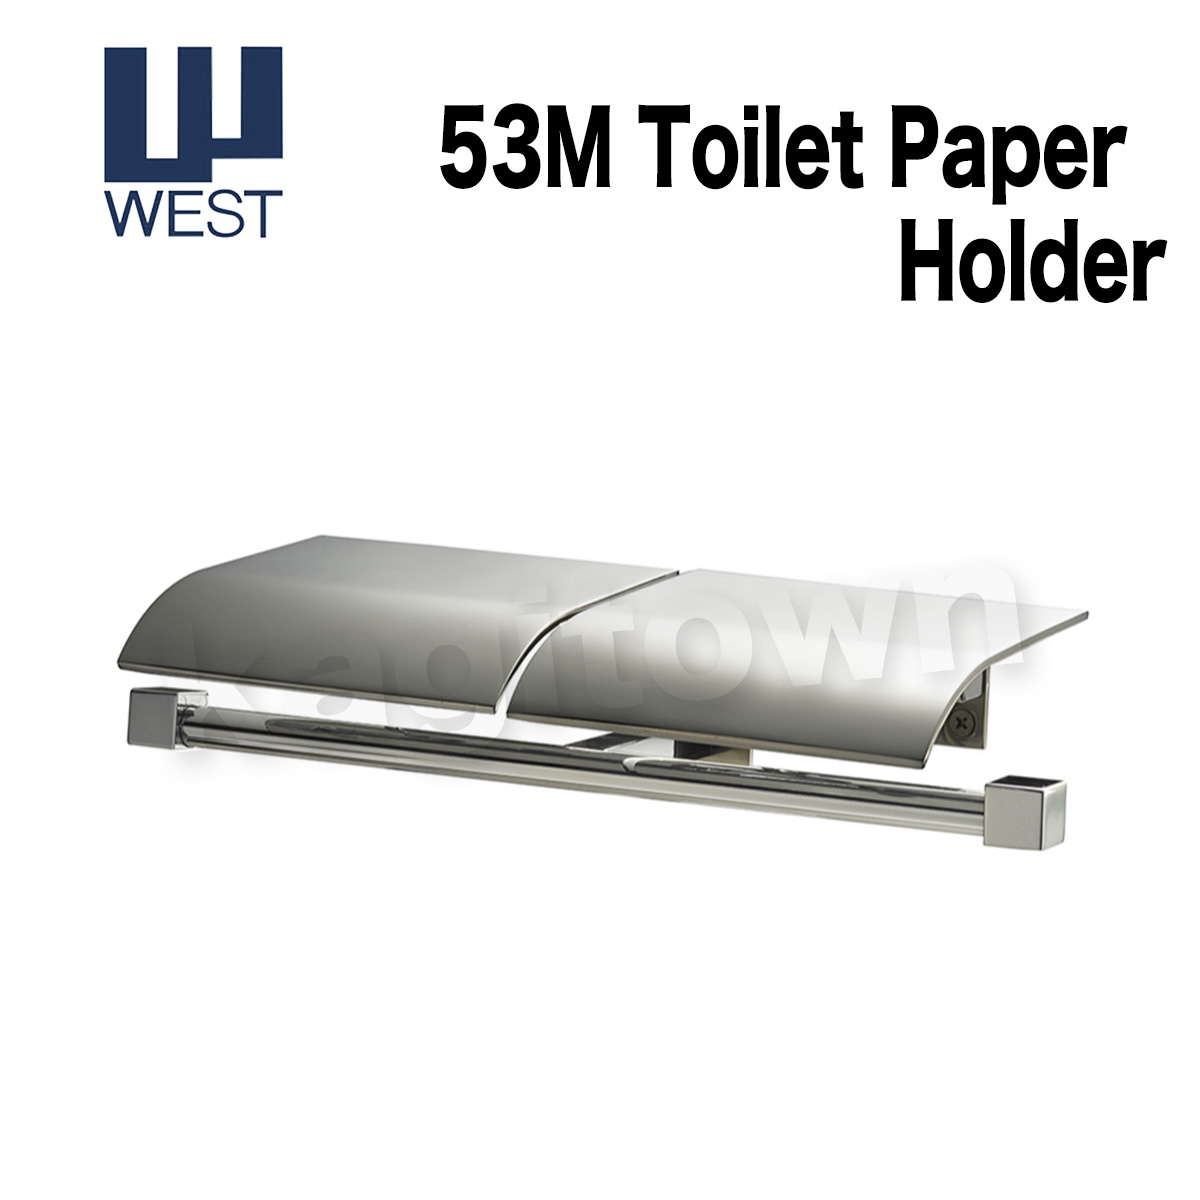 WEST 【ウエスト】トイレットペーパーホルダー[WEST-53M]mono 53M Toilet paper  Holder・シリンダーの格安ネット通販【鍵TOWN】